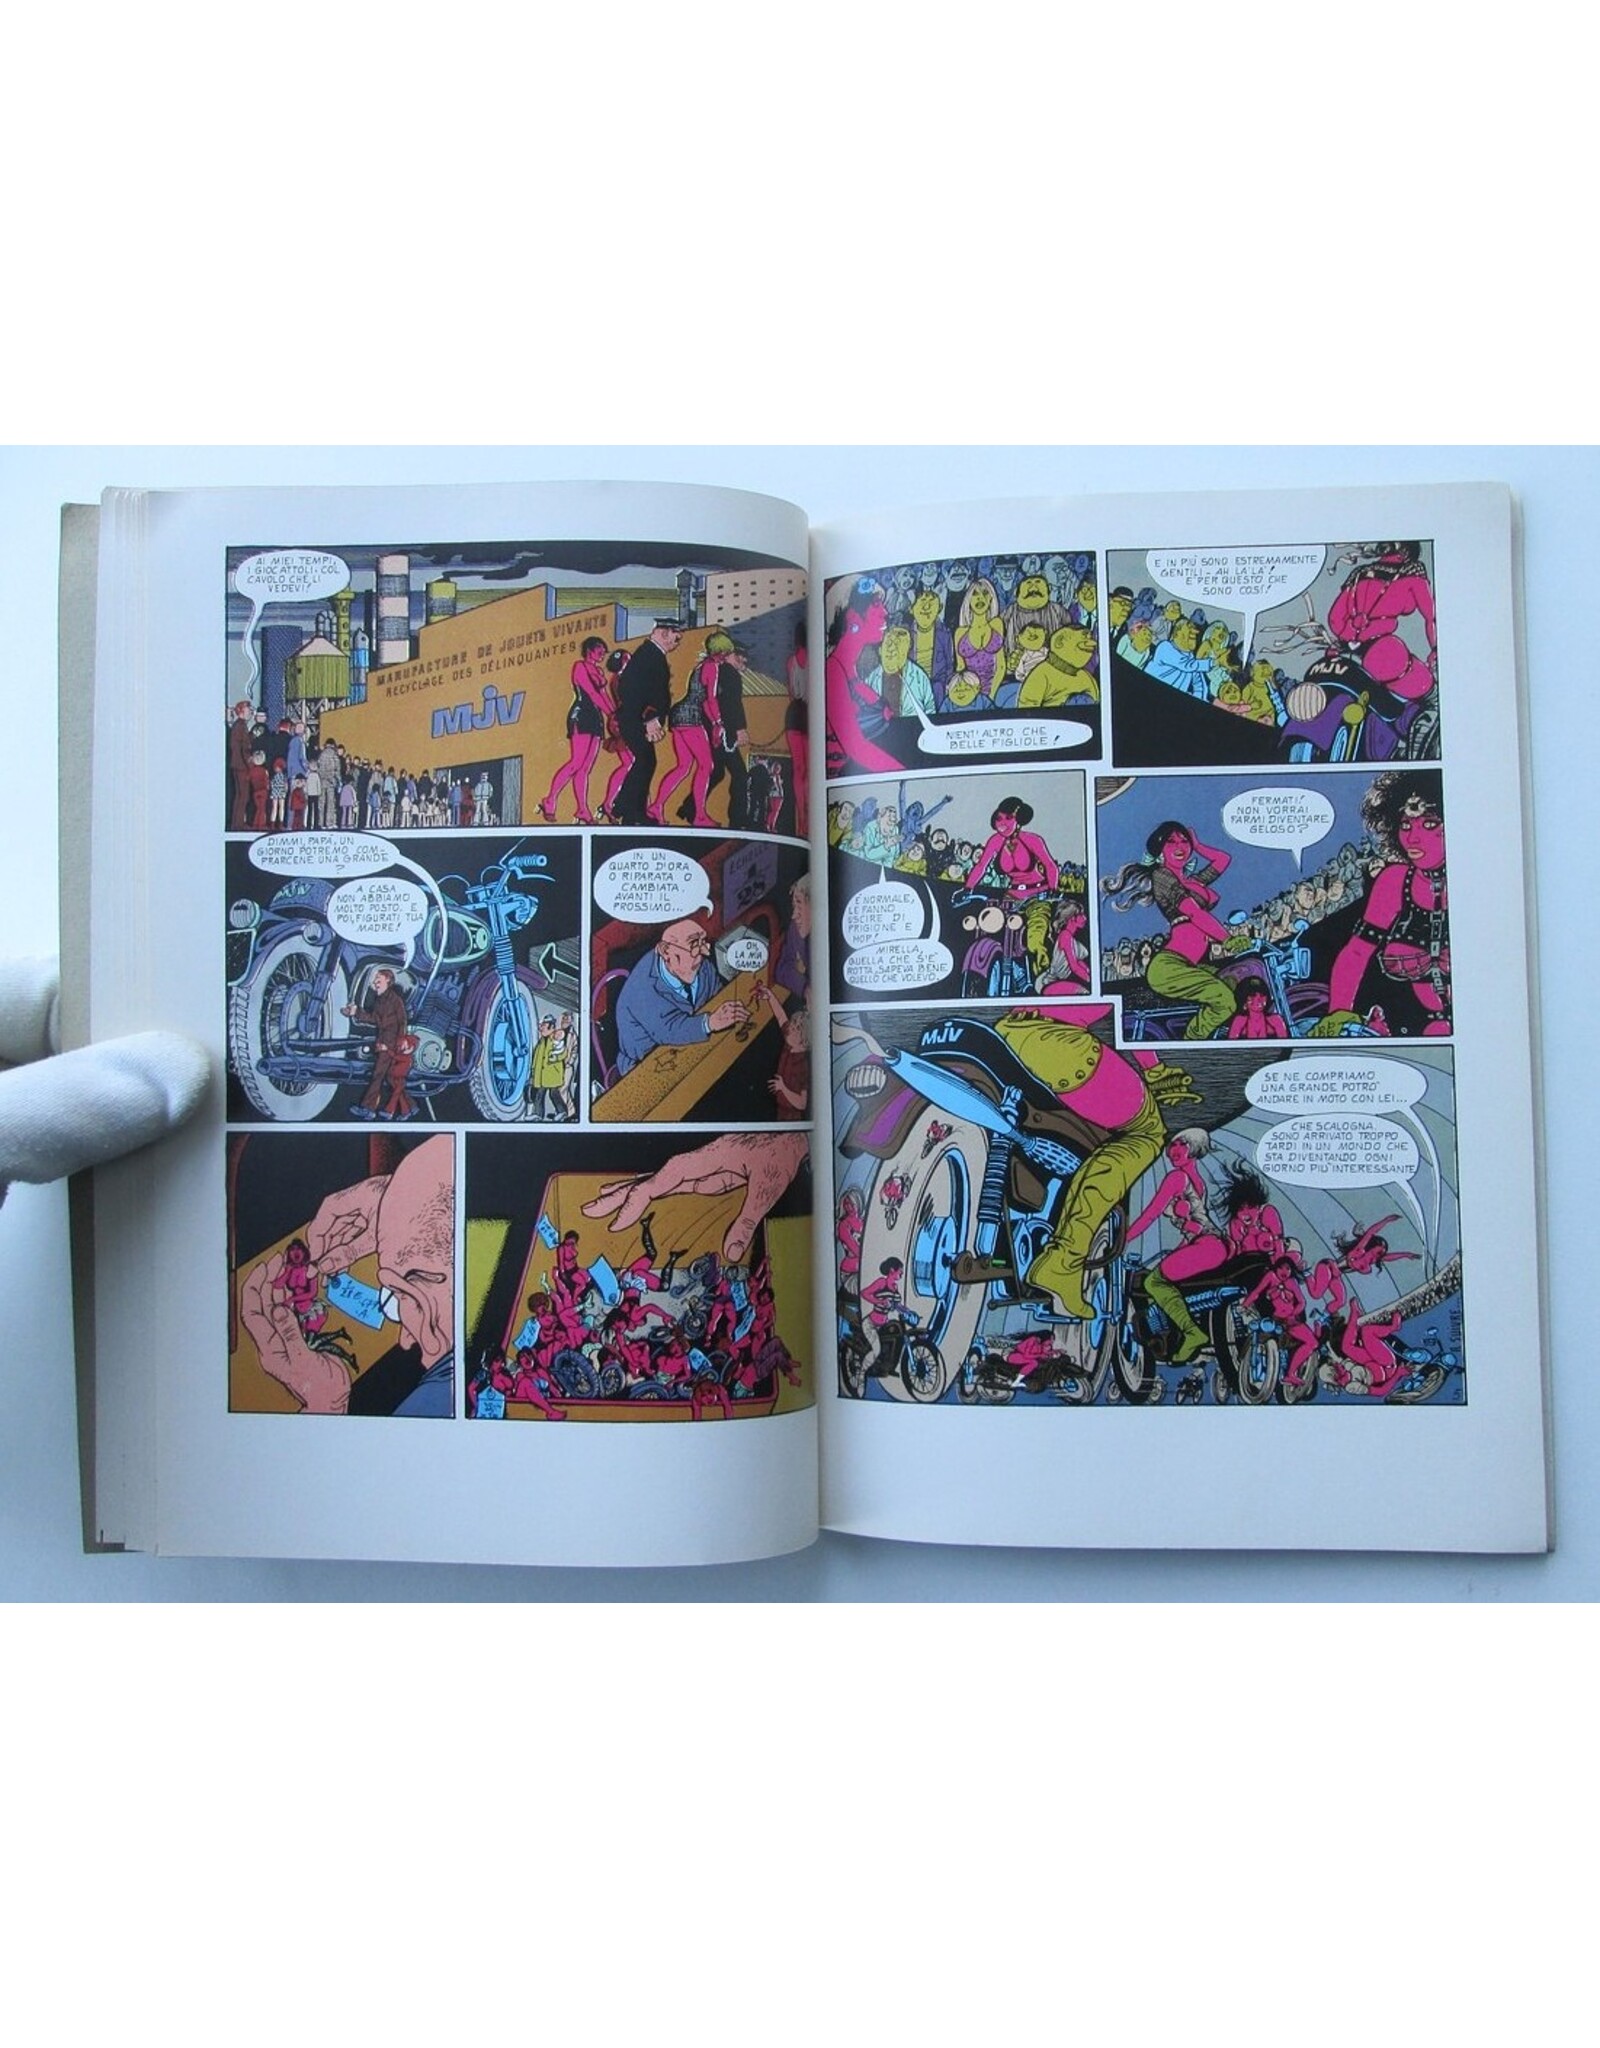 G. Pichard & C. Faraldo - 1984 presenta: I grandi protagonisti del fumetto mondiale. Bambole